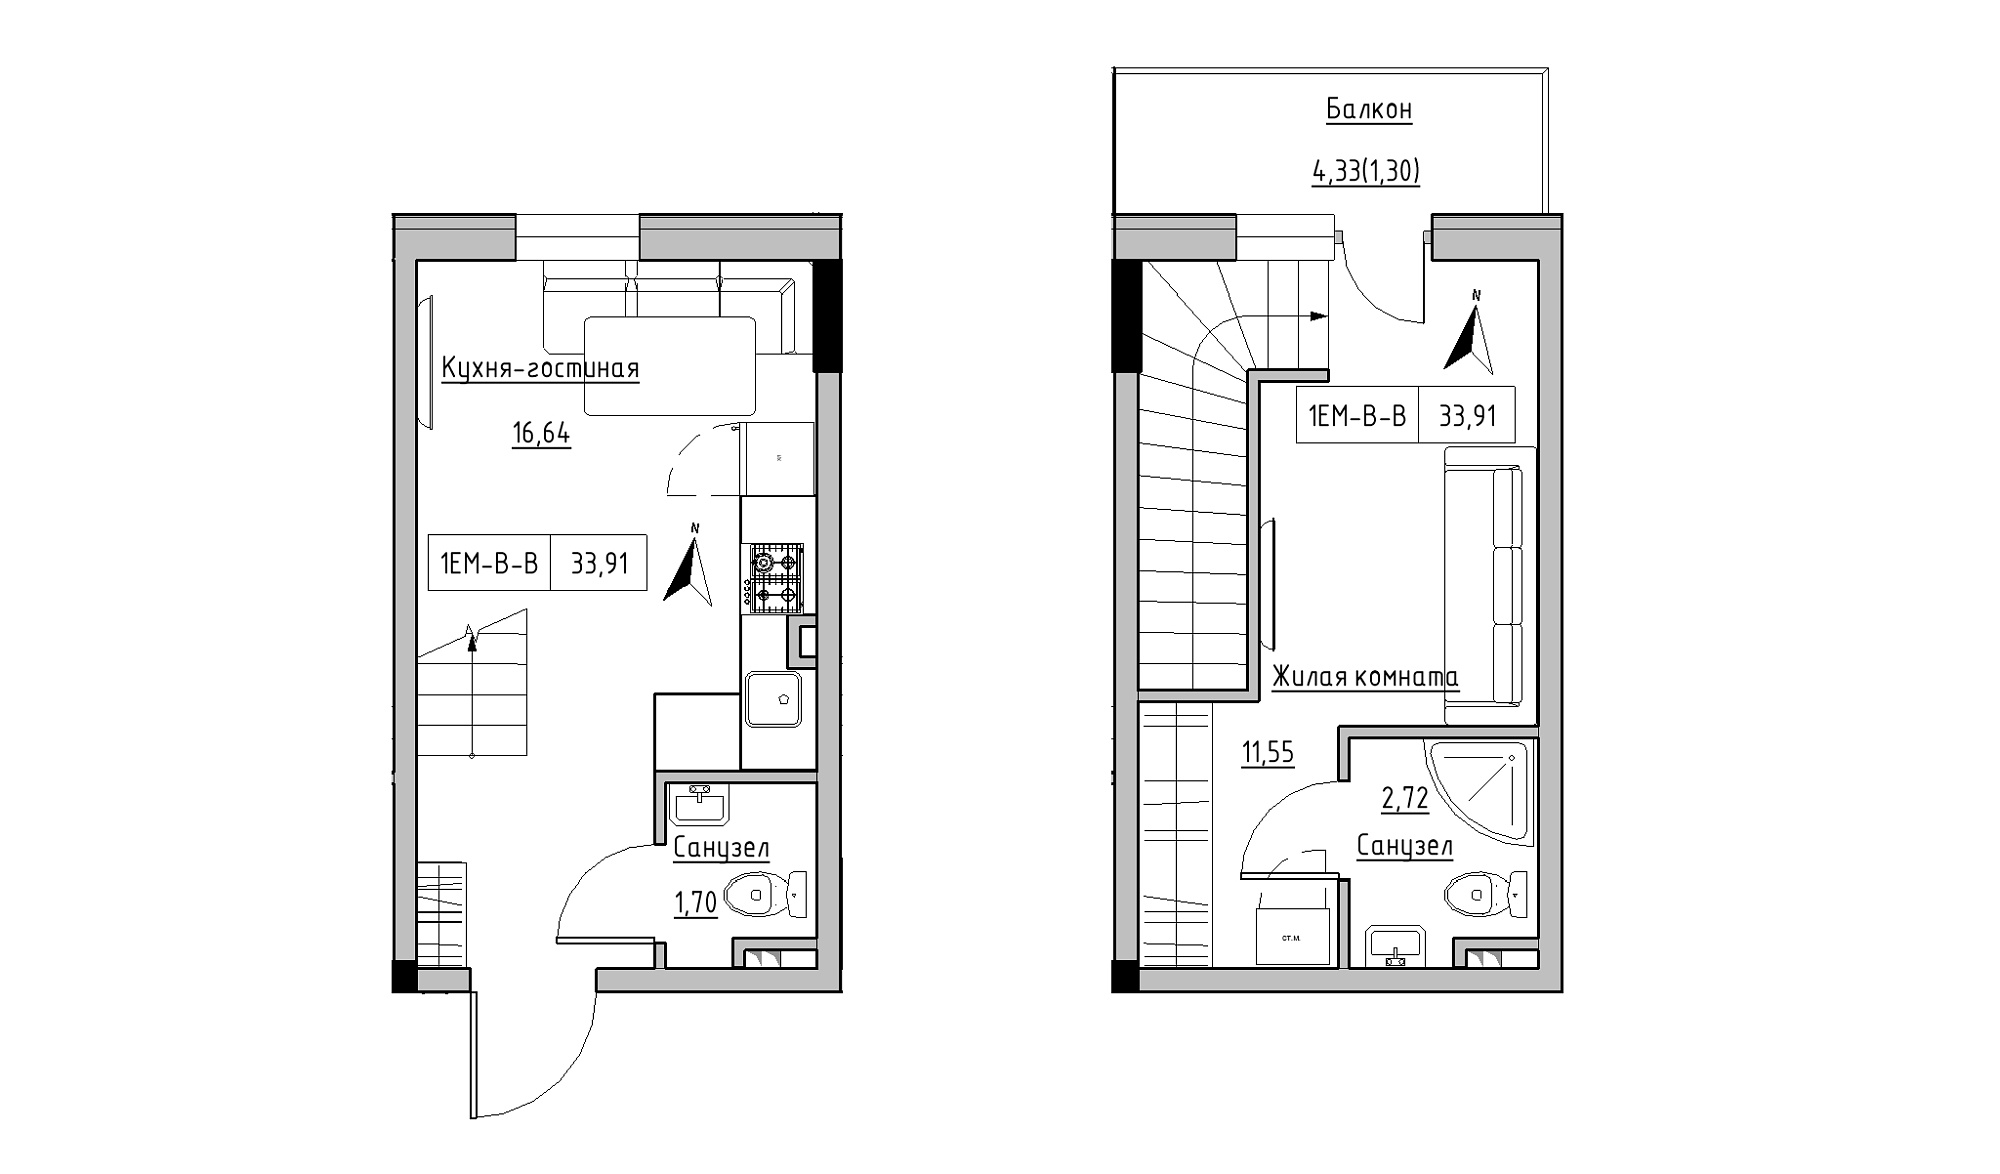 Planning 2-lvl flats area 33.91m2, KS-025-05/0006.